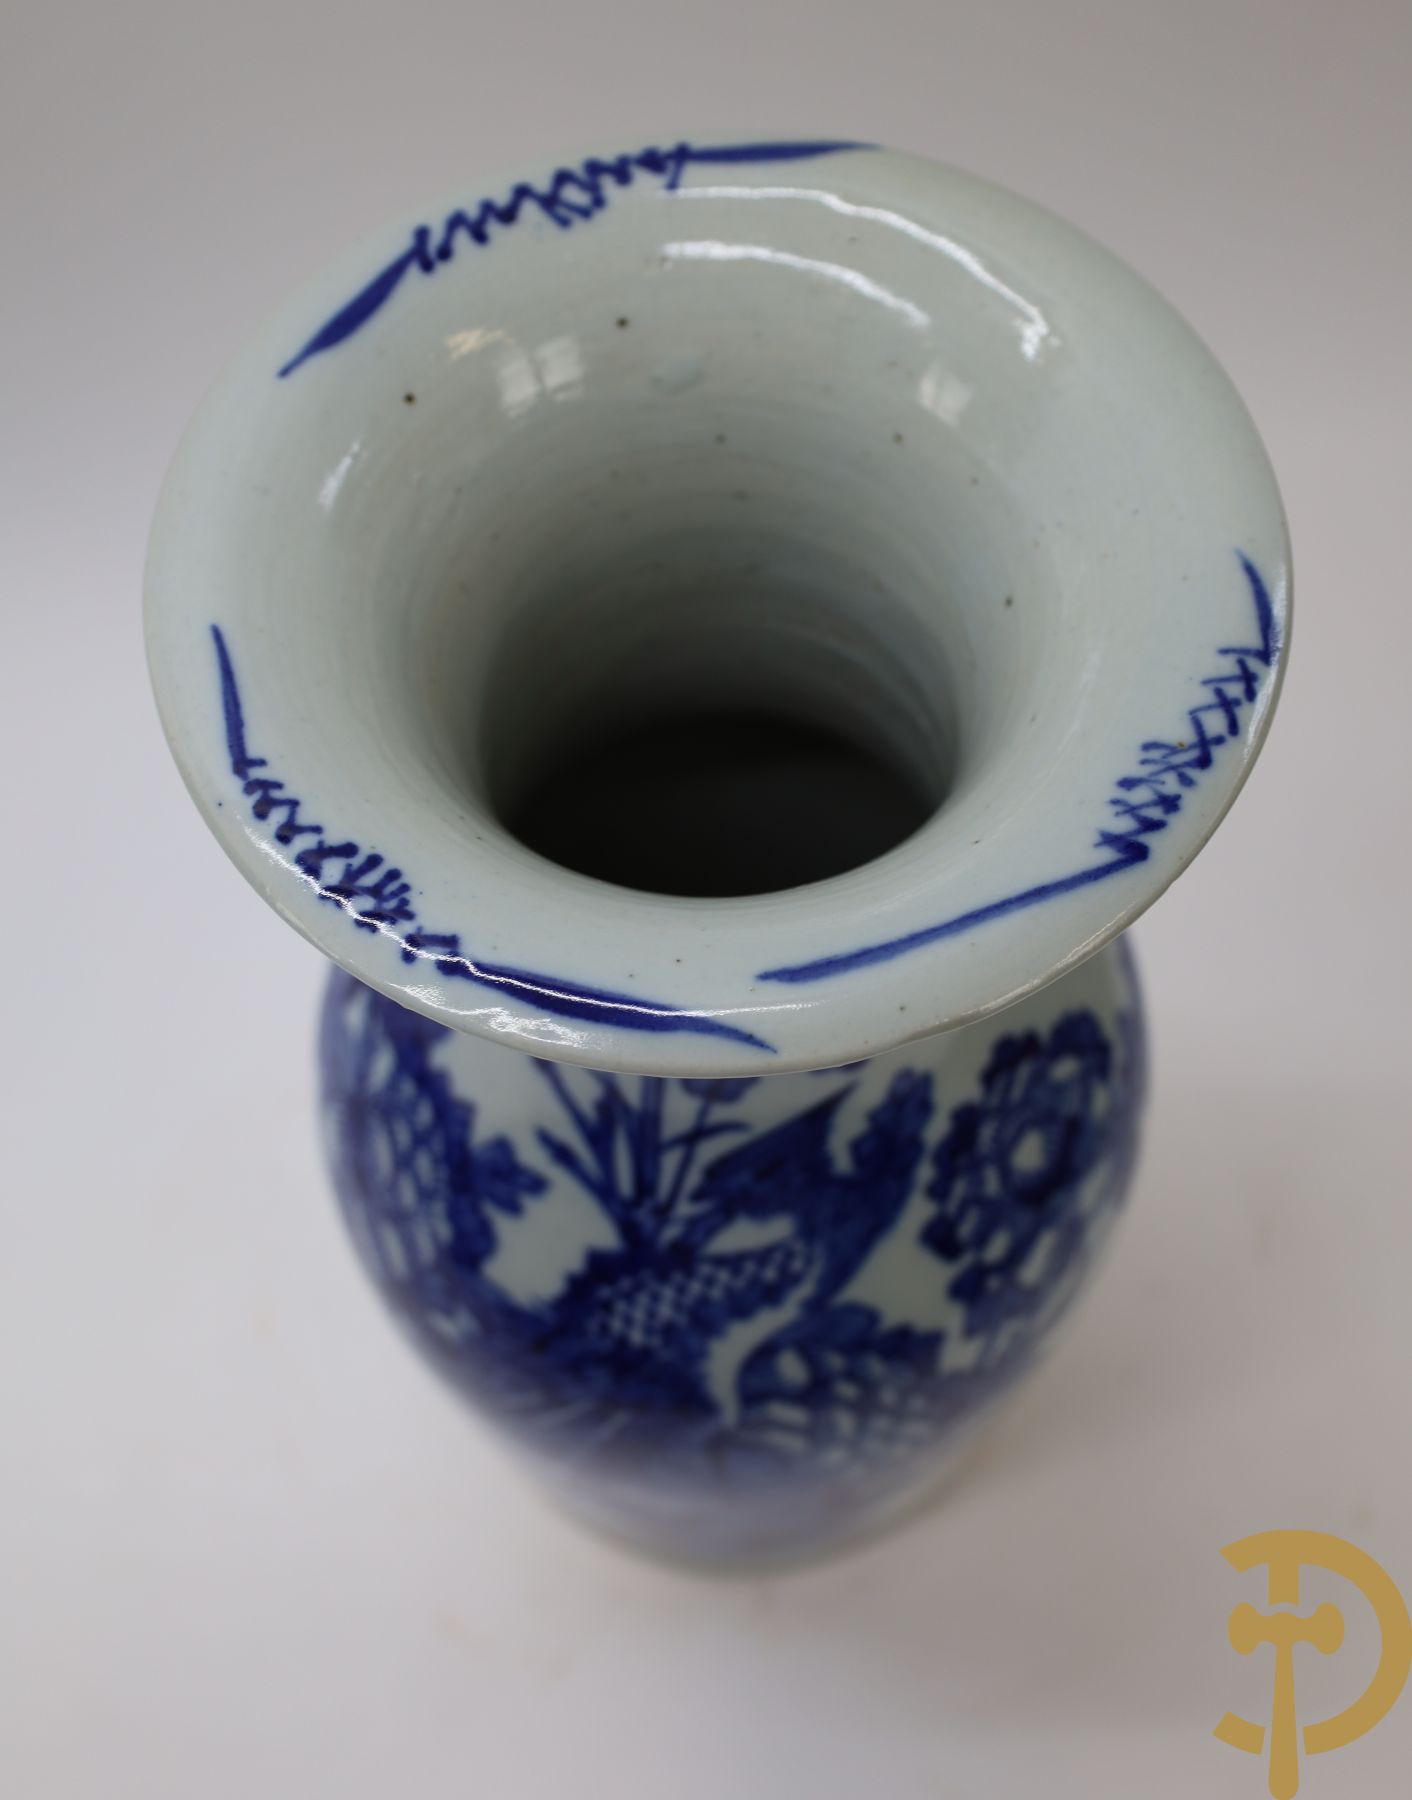 Chinese porseleinen vaas met blauw/wit decor van vogels en bloemen